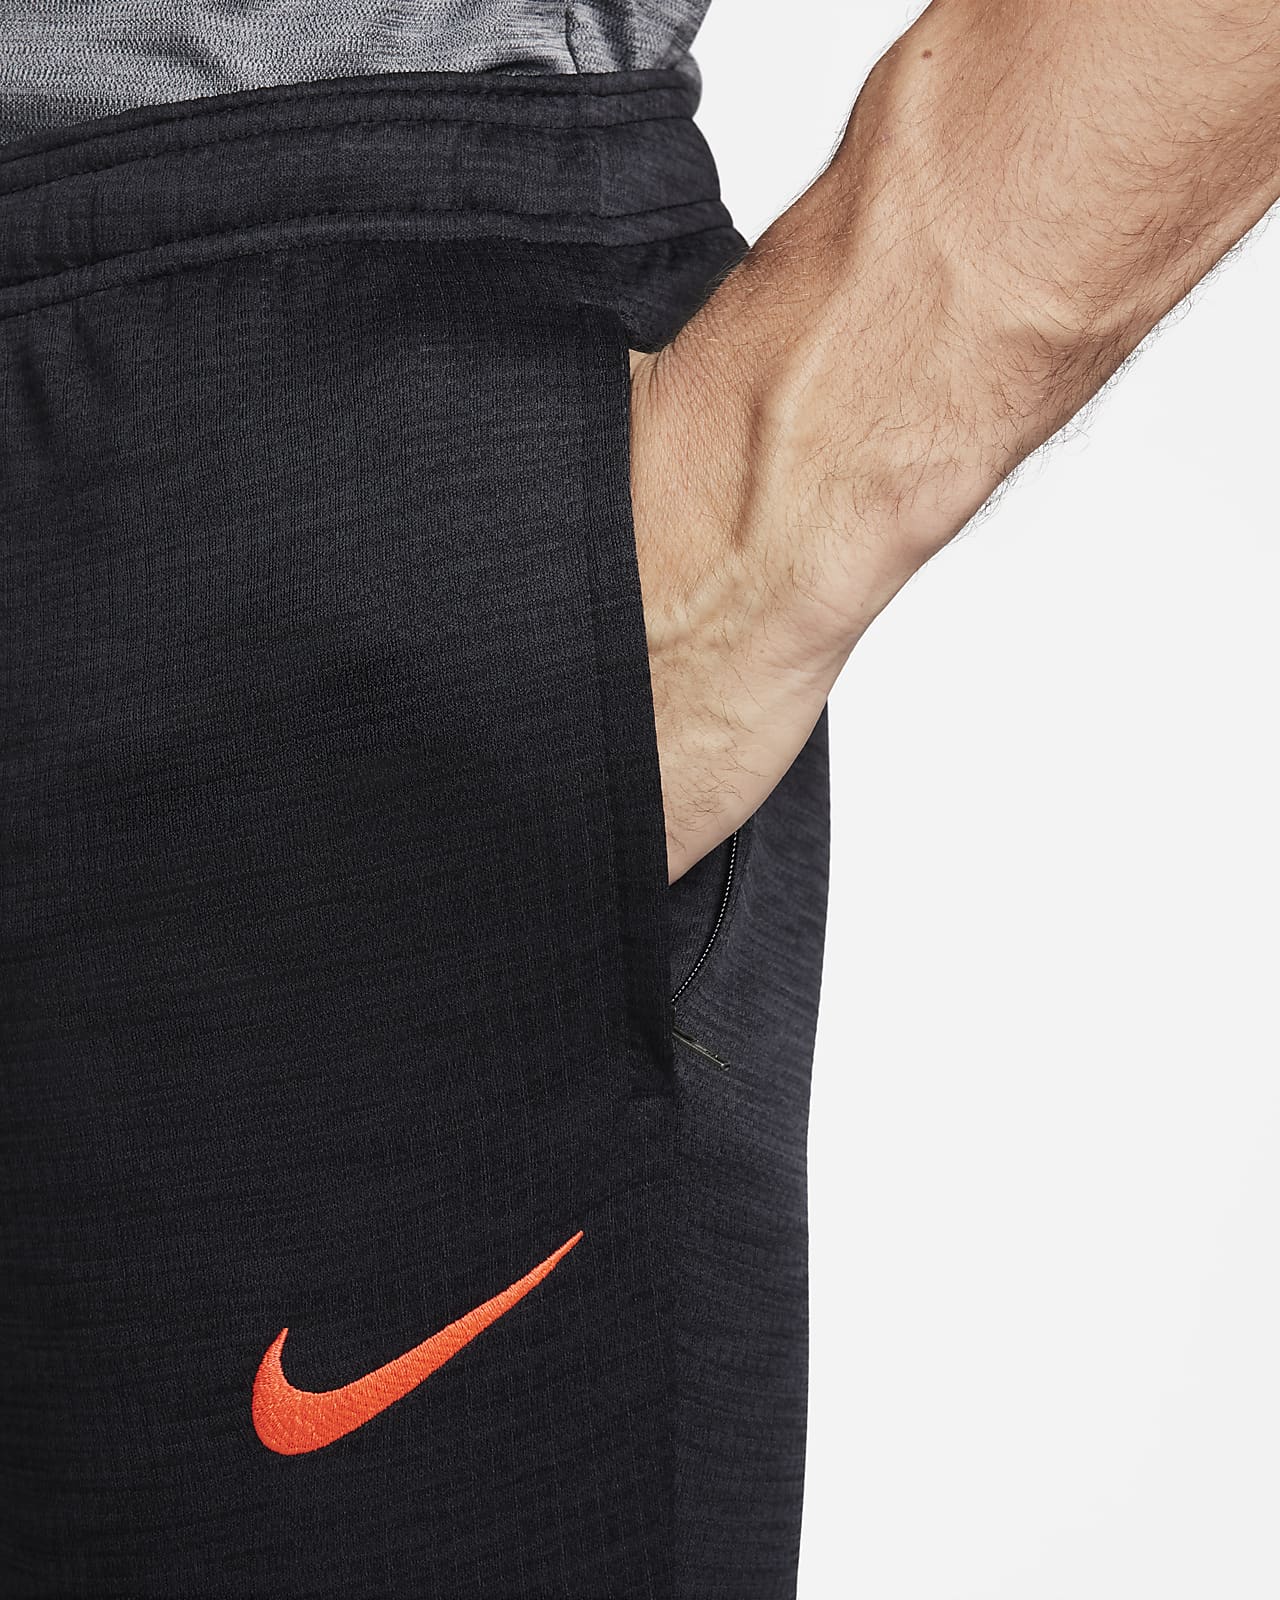 Pantalon de foot Nike Dri-FIT Academy pour homme. Nike FR